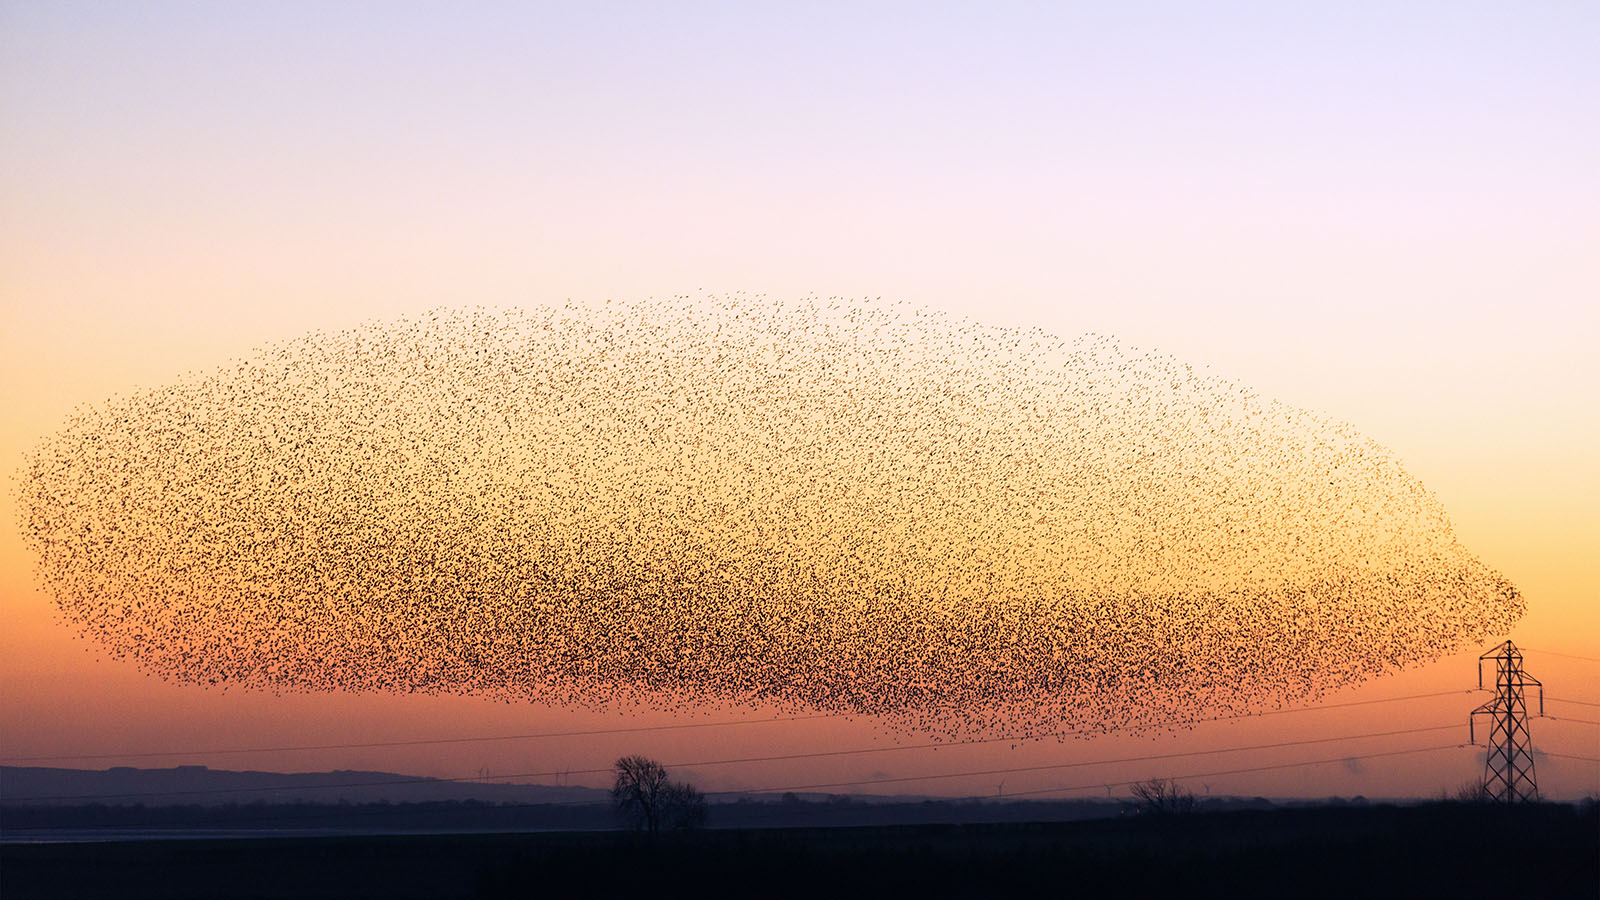 Birds flocking together during sunset